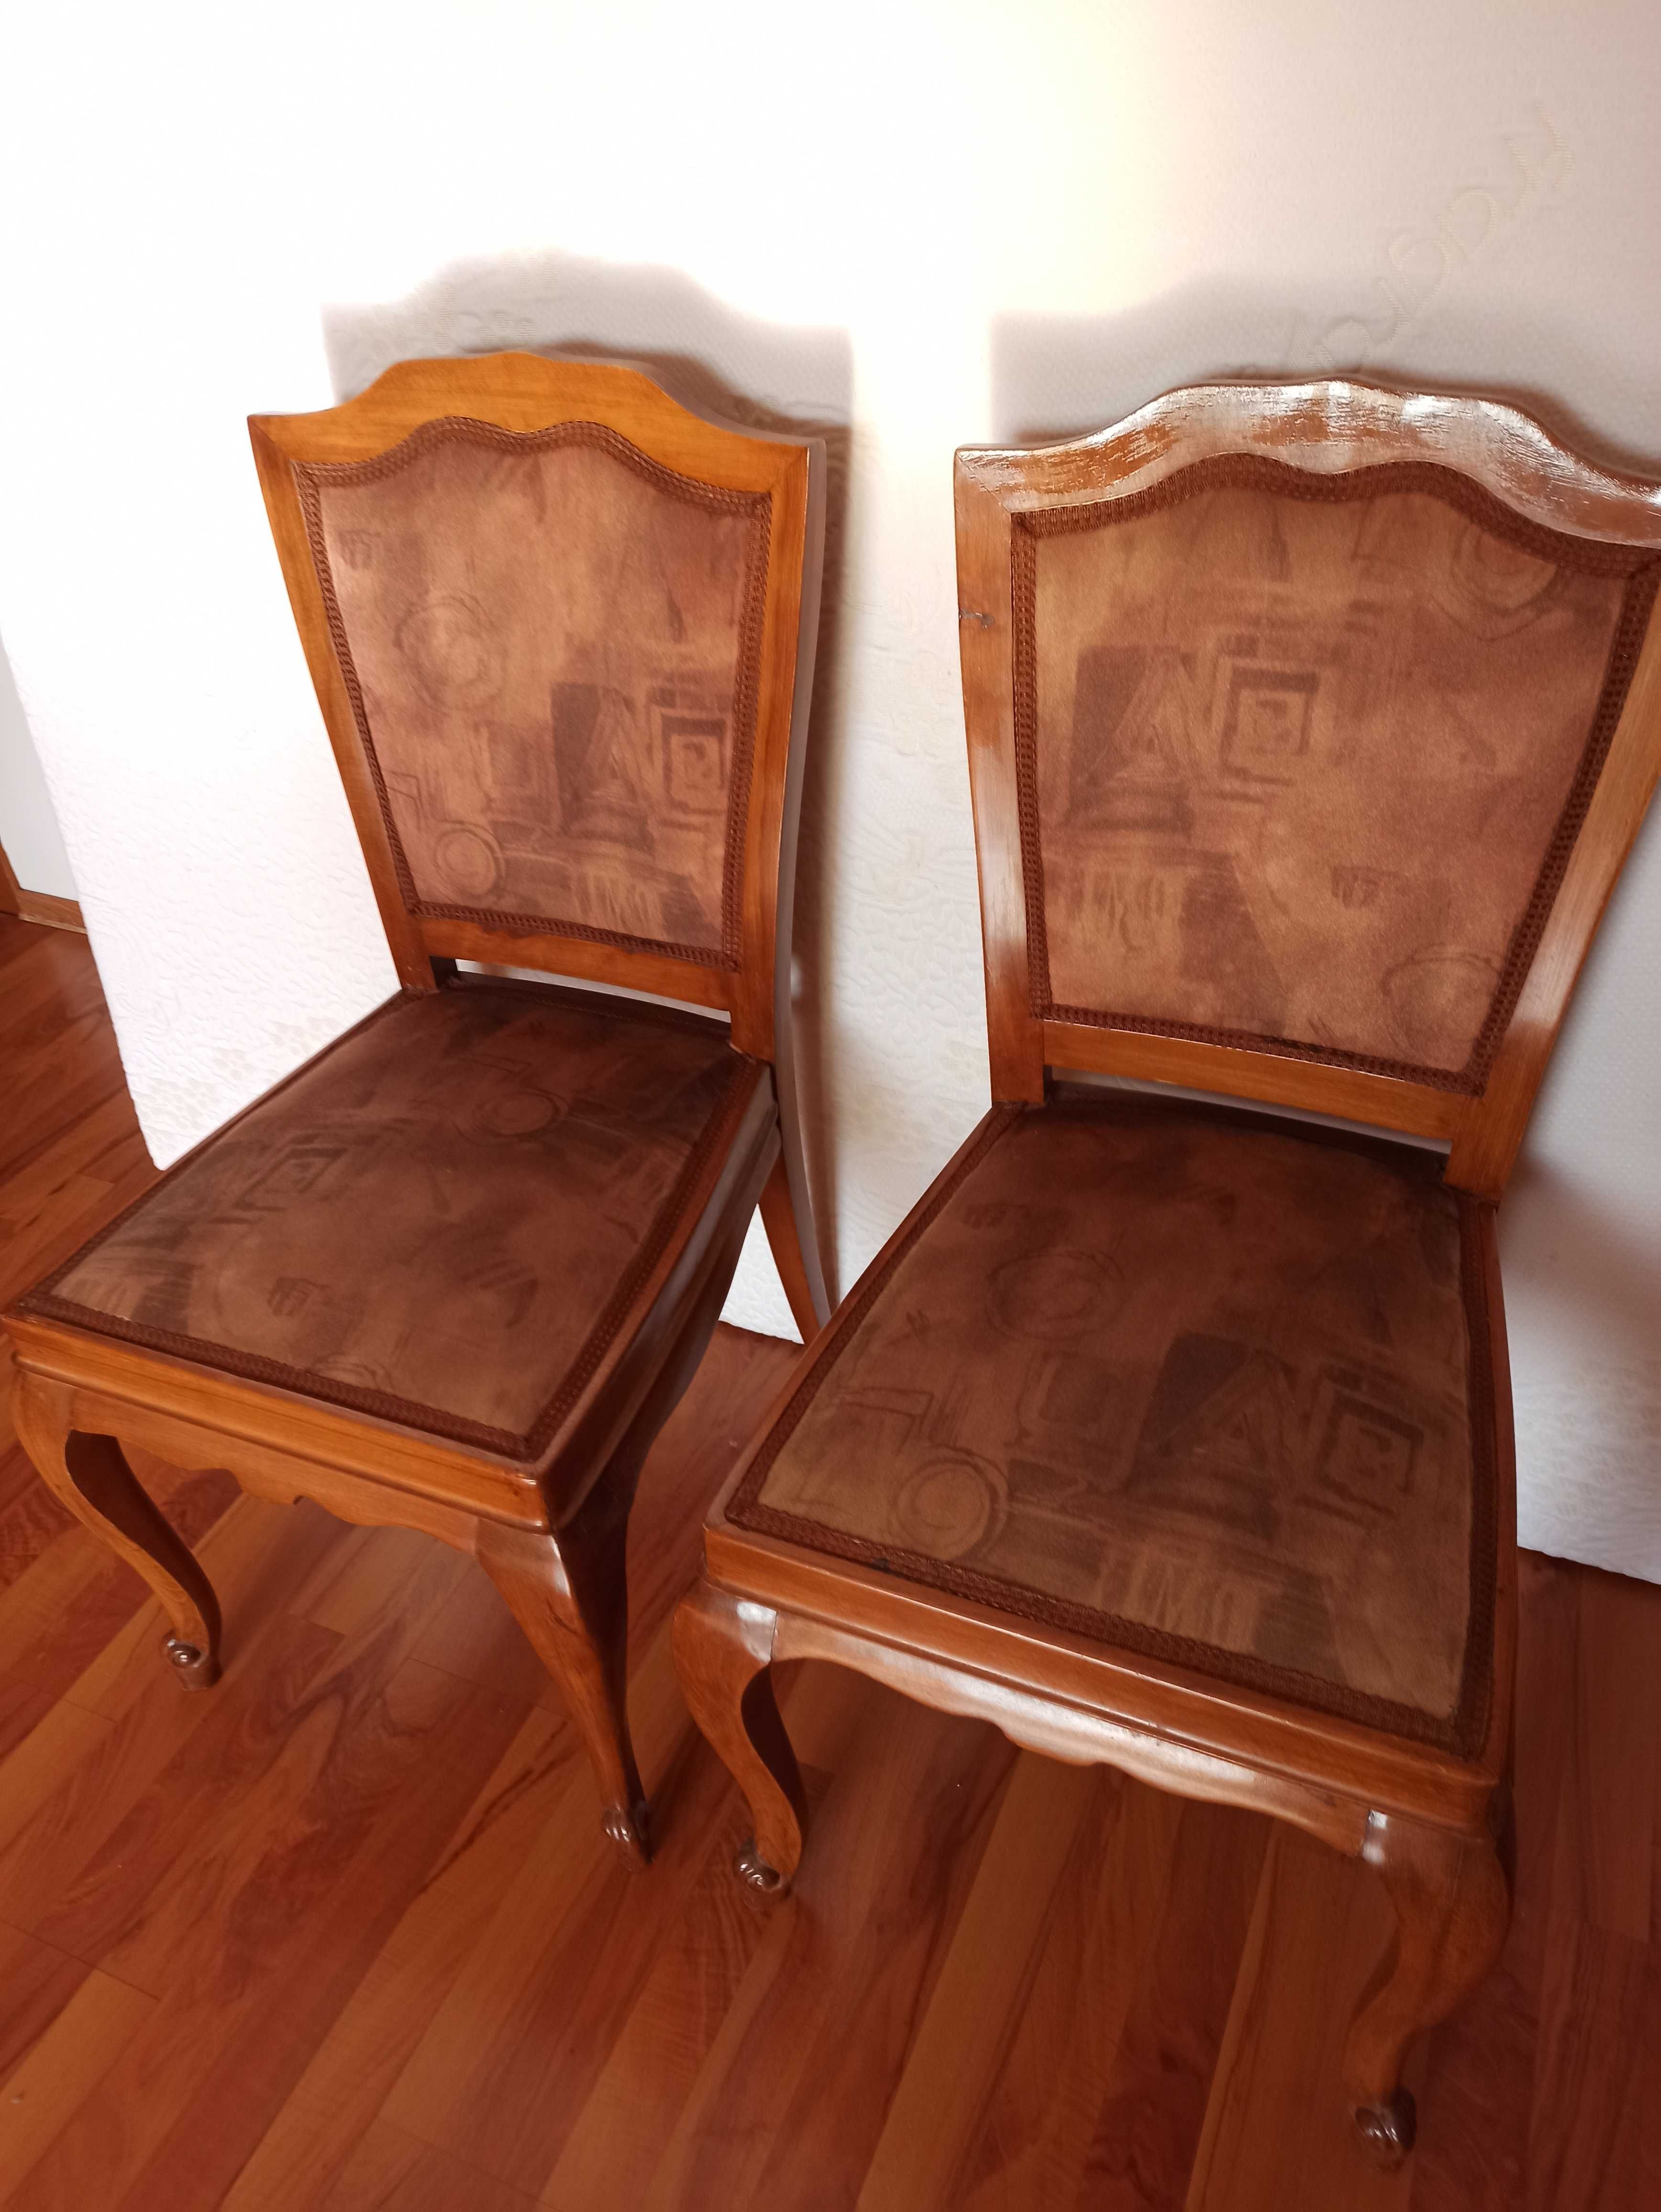 Vând 2 scaune sufragerie tapițate și sculptate in lemn.Preț 400 Lei